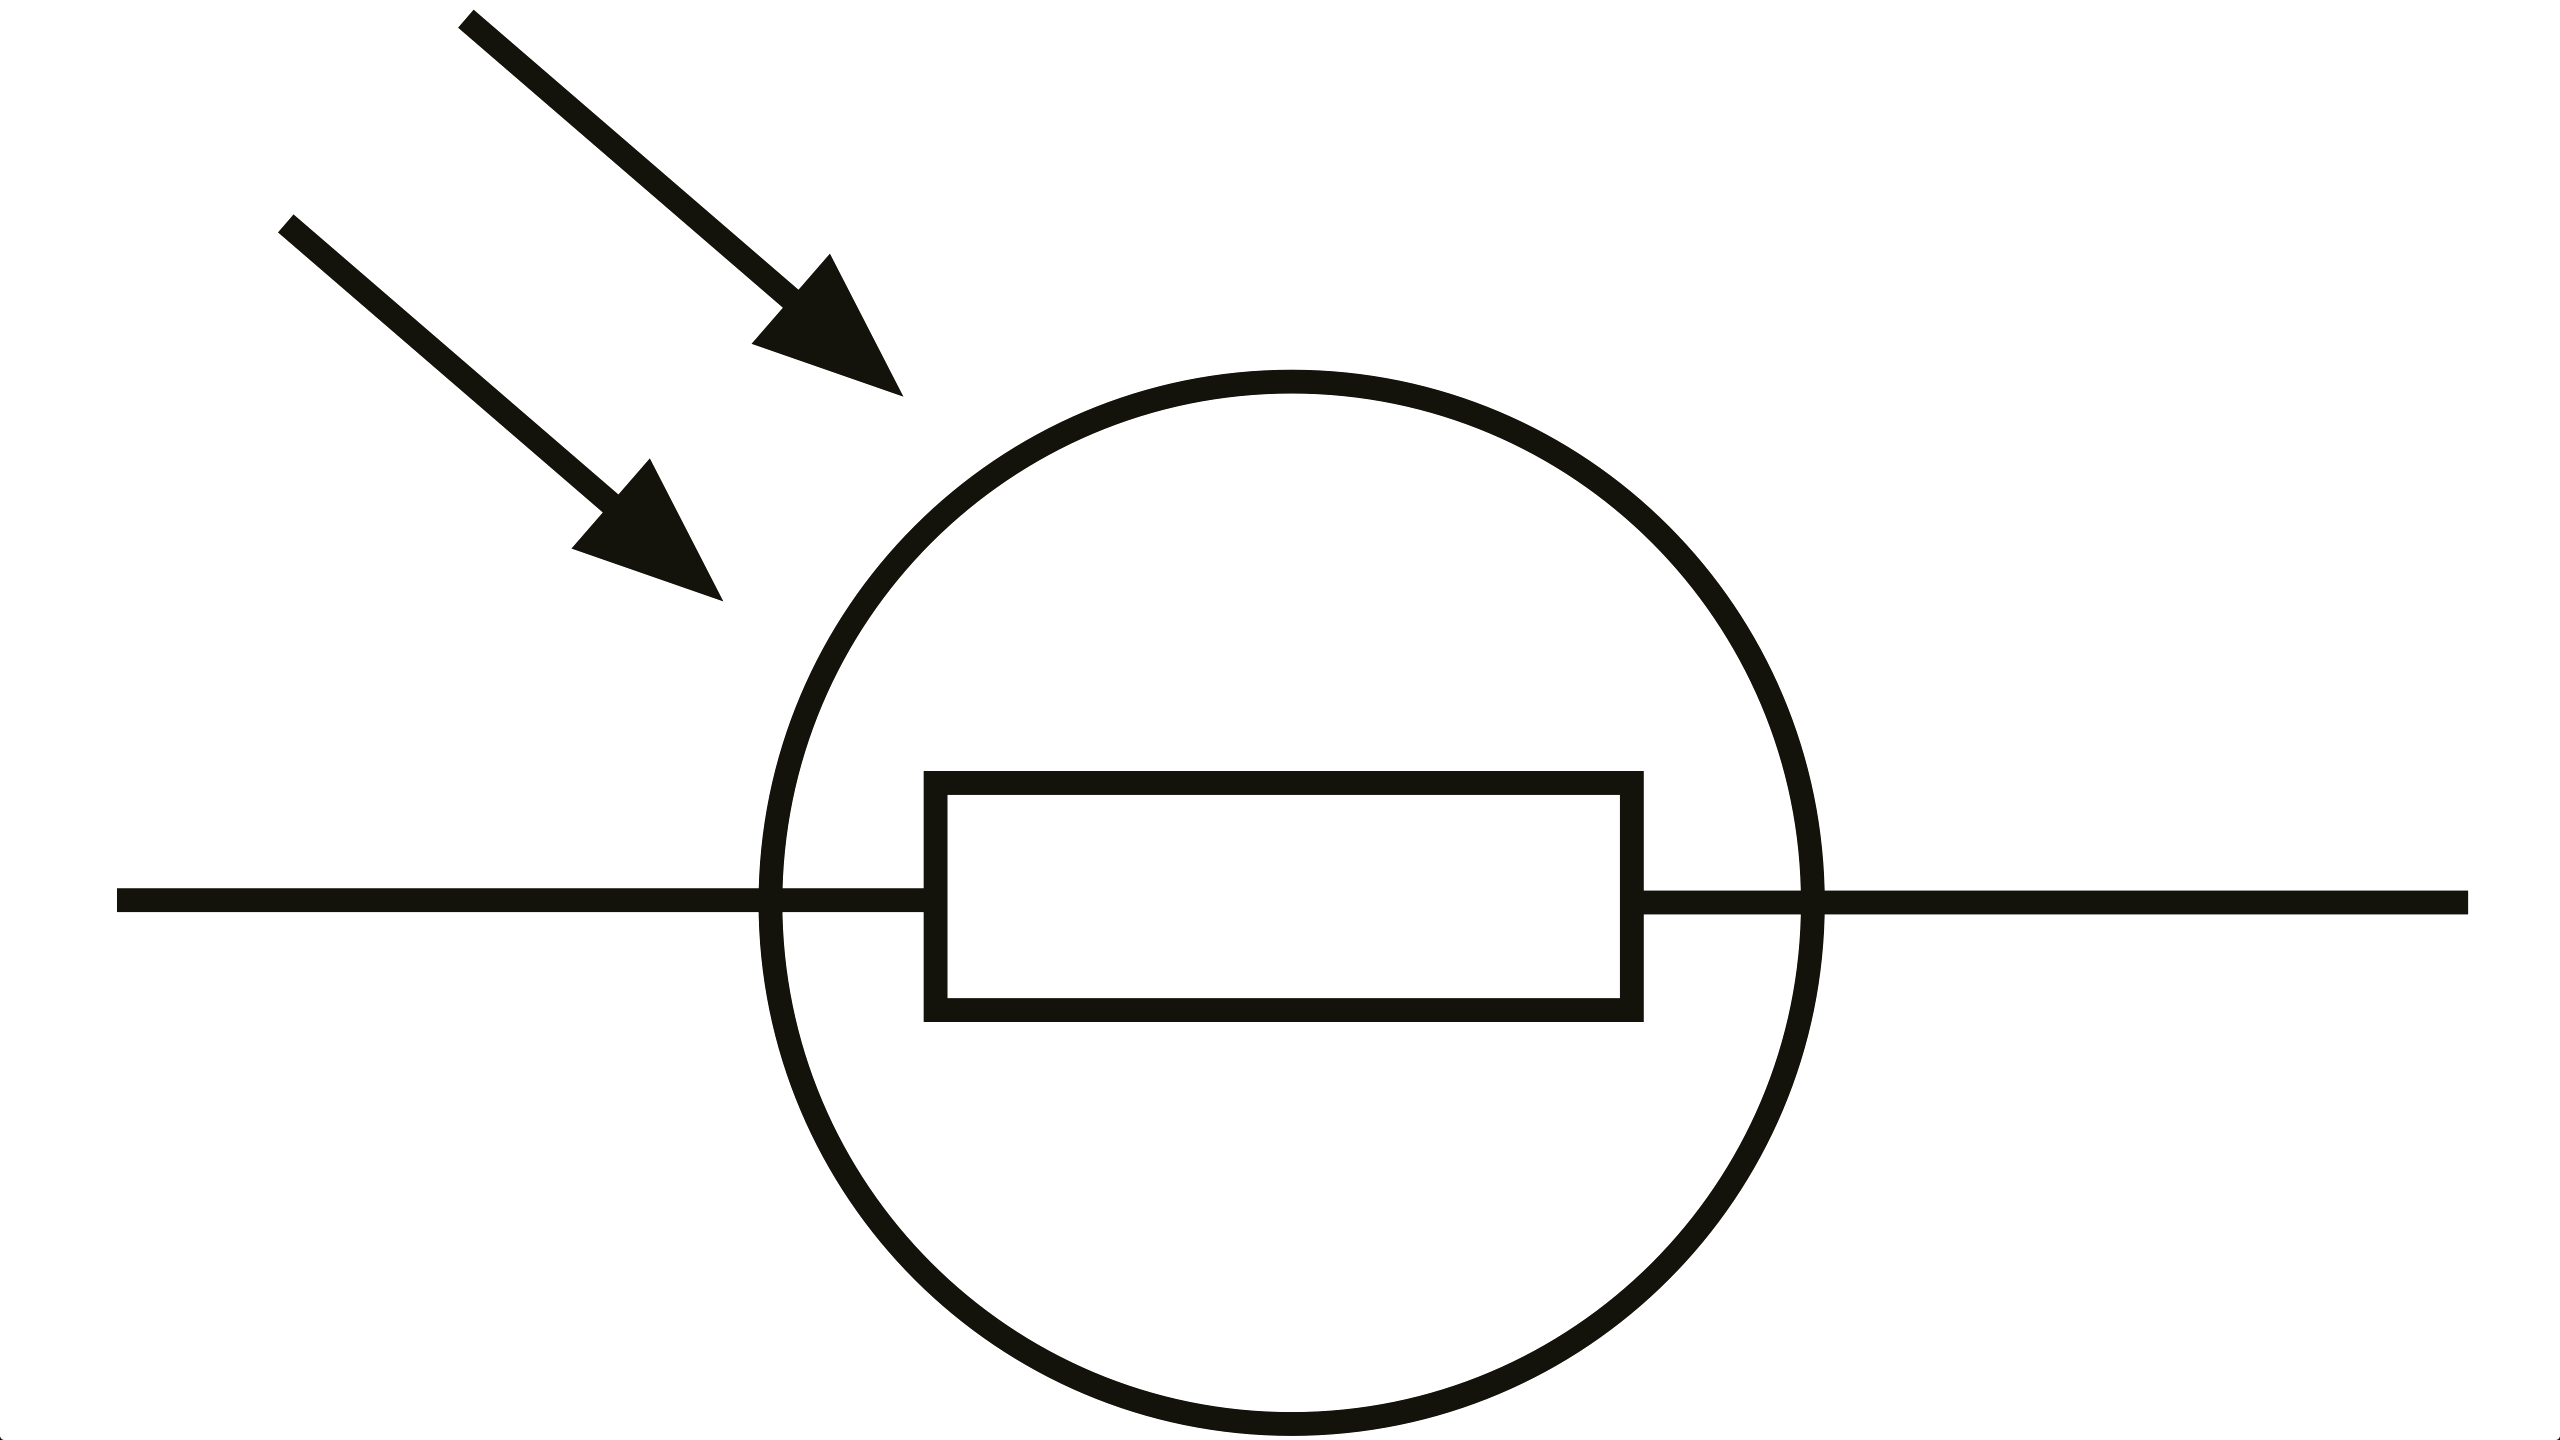 Component. symbol of a resistor: Clipart Rsa Iec Resistor Symbol ...